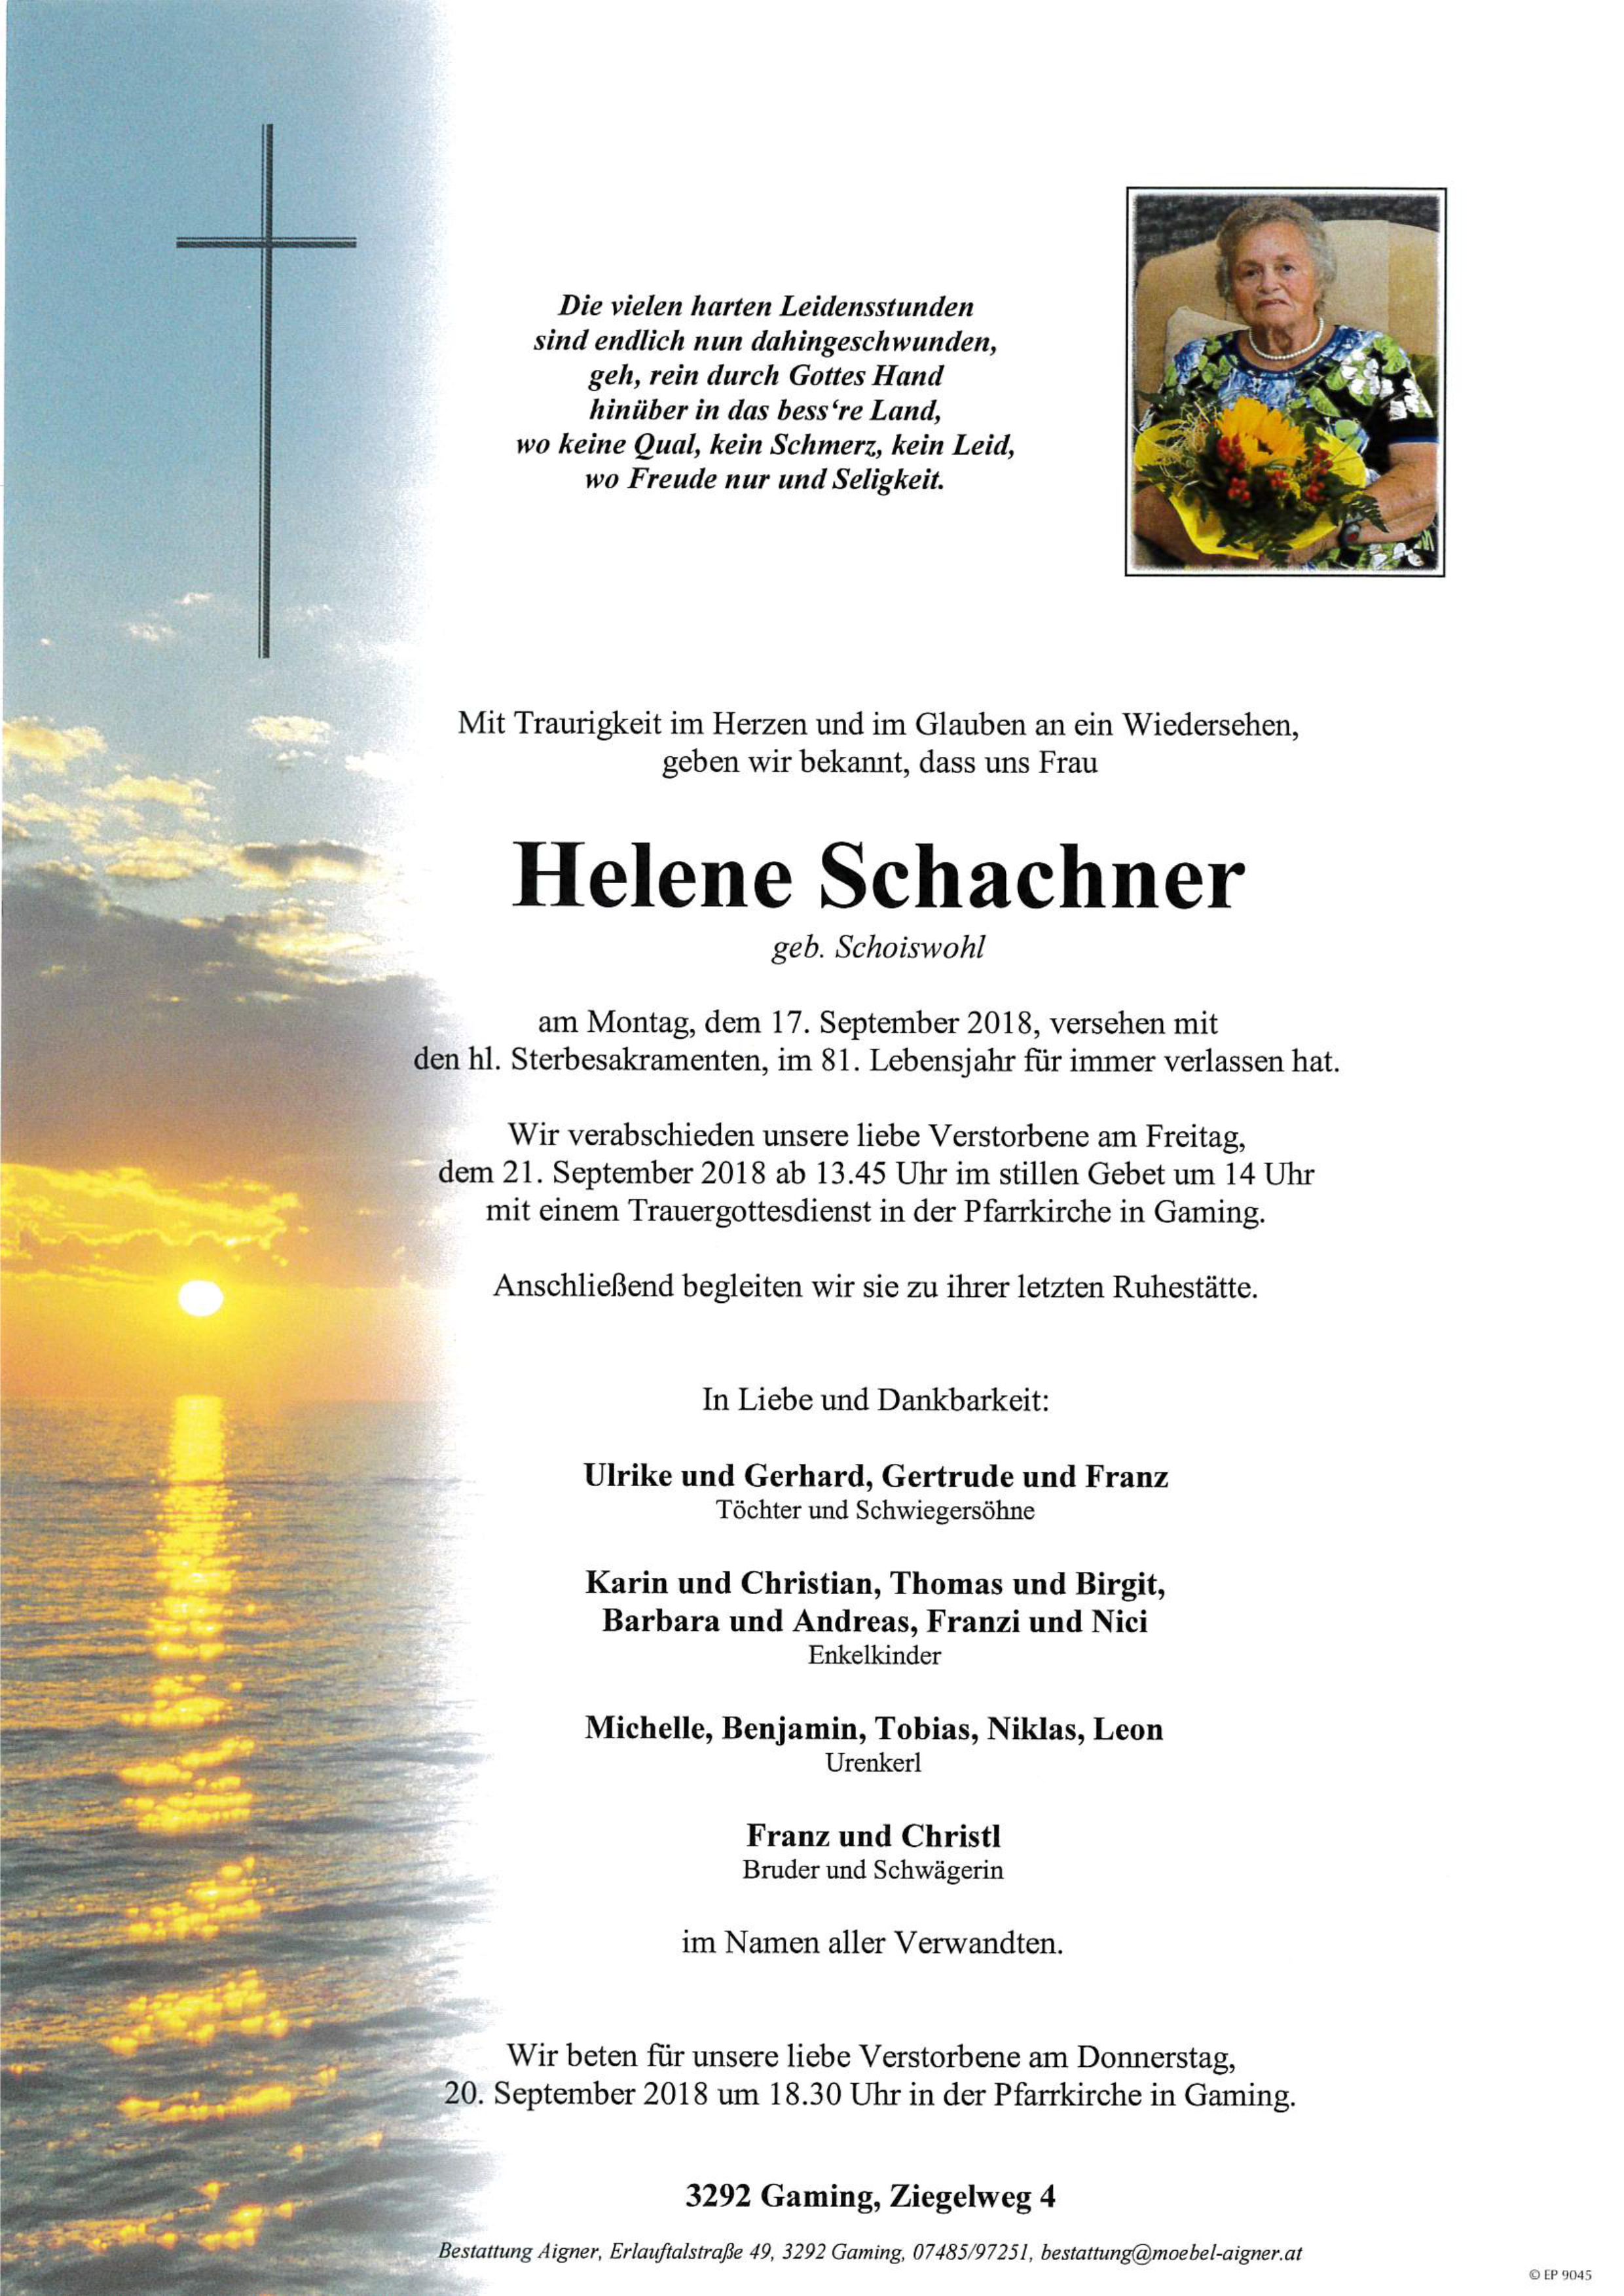 Helene Schachner